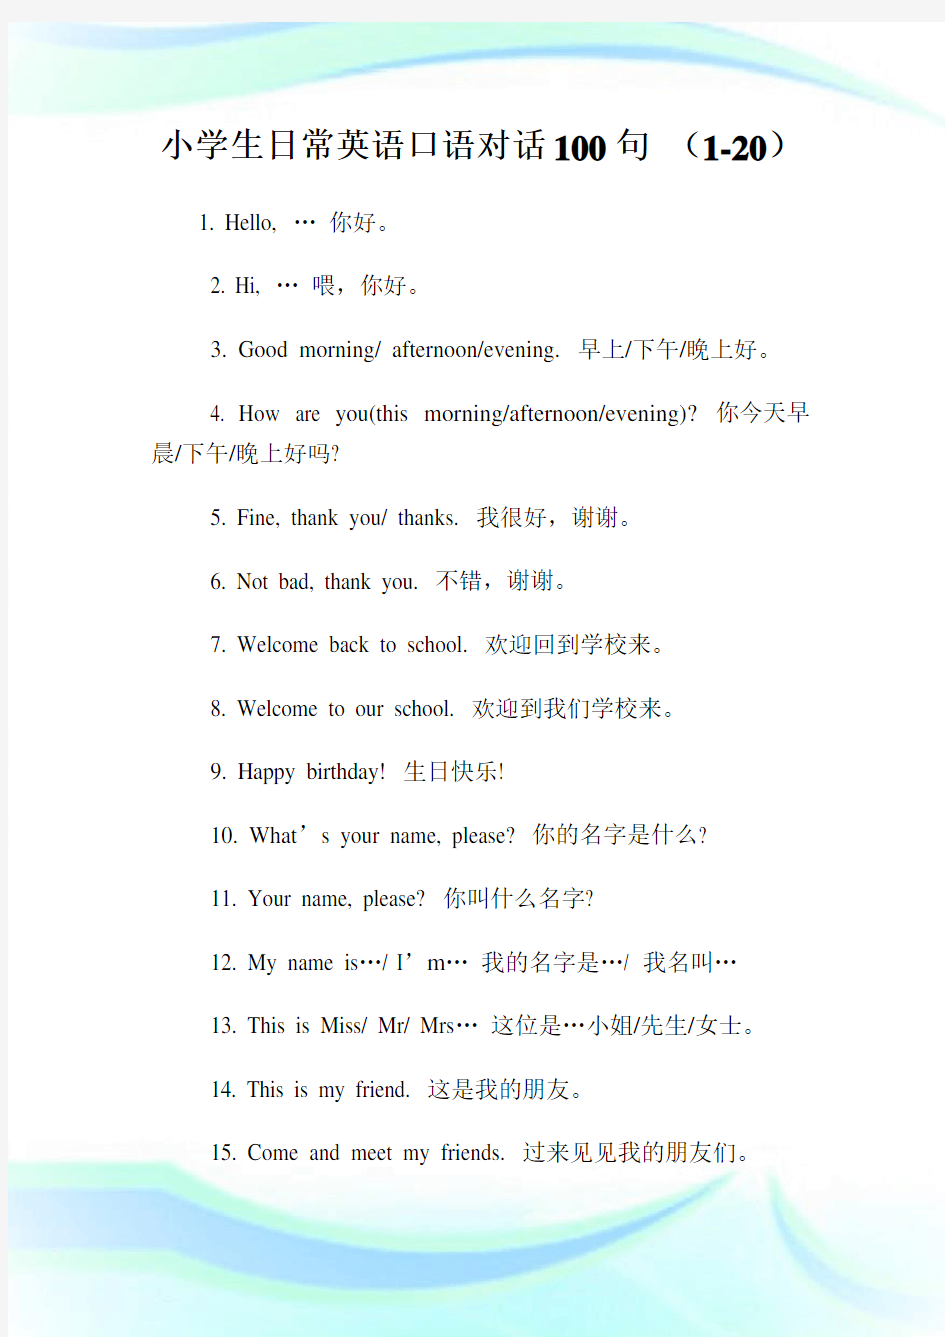 小学生日常英语口语对话100句 (1-20).doc